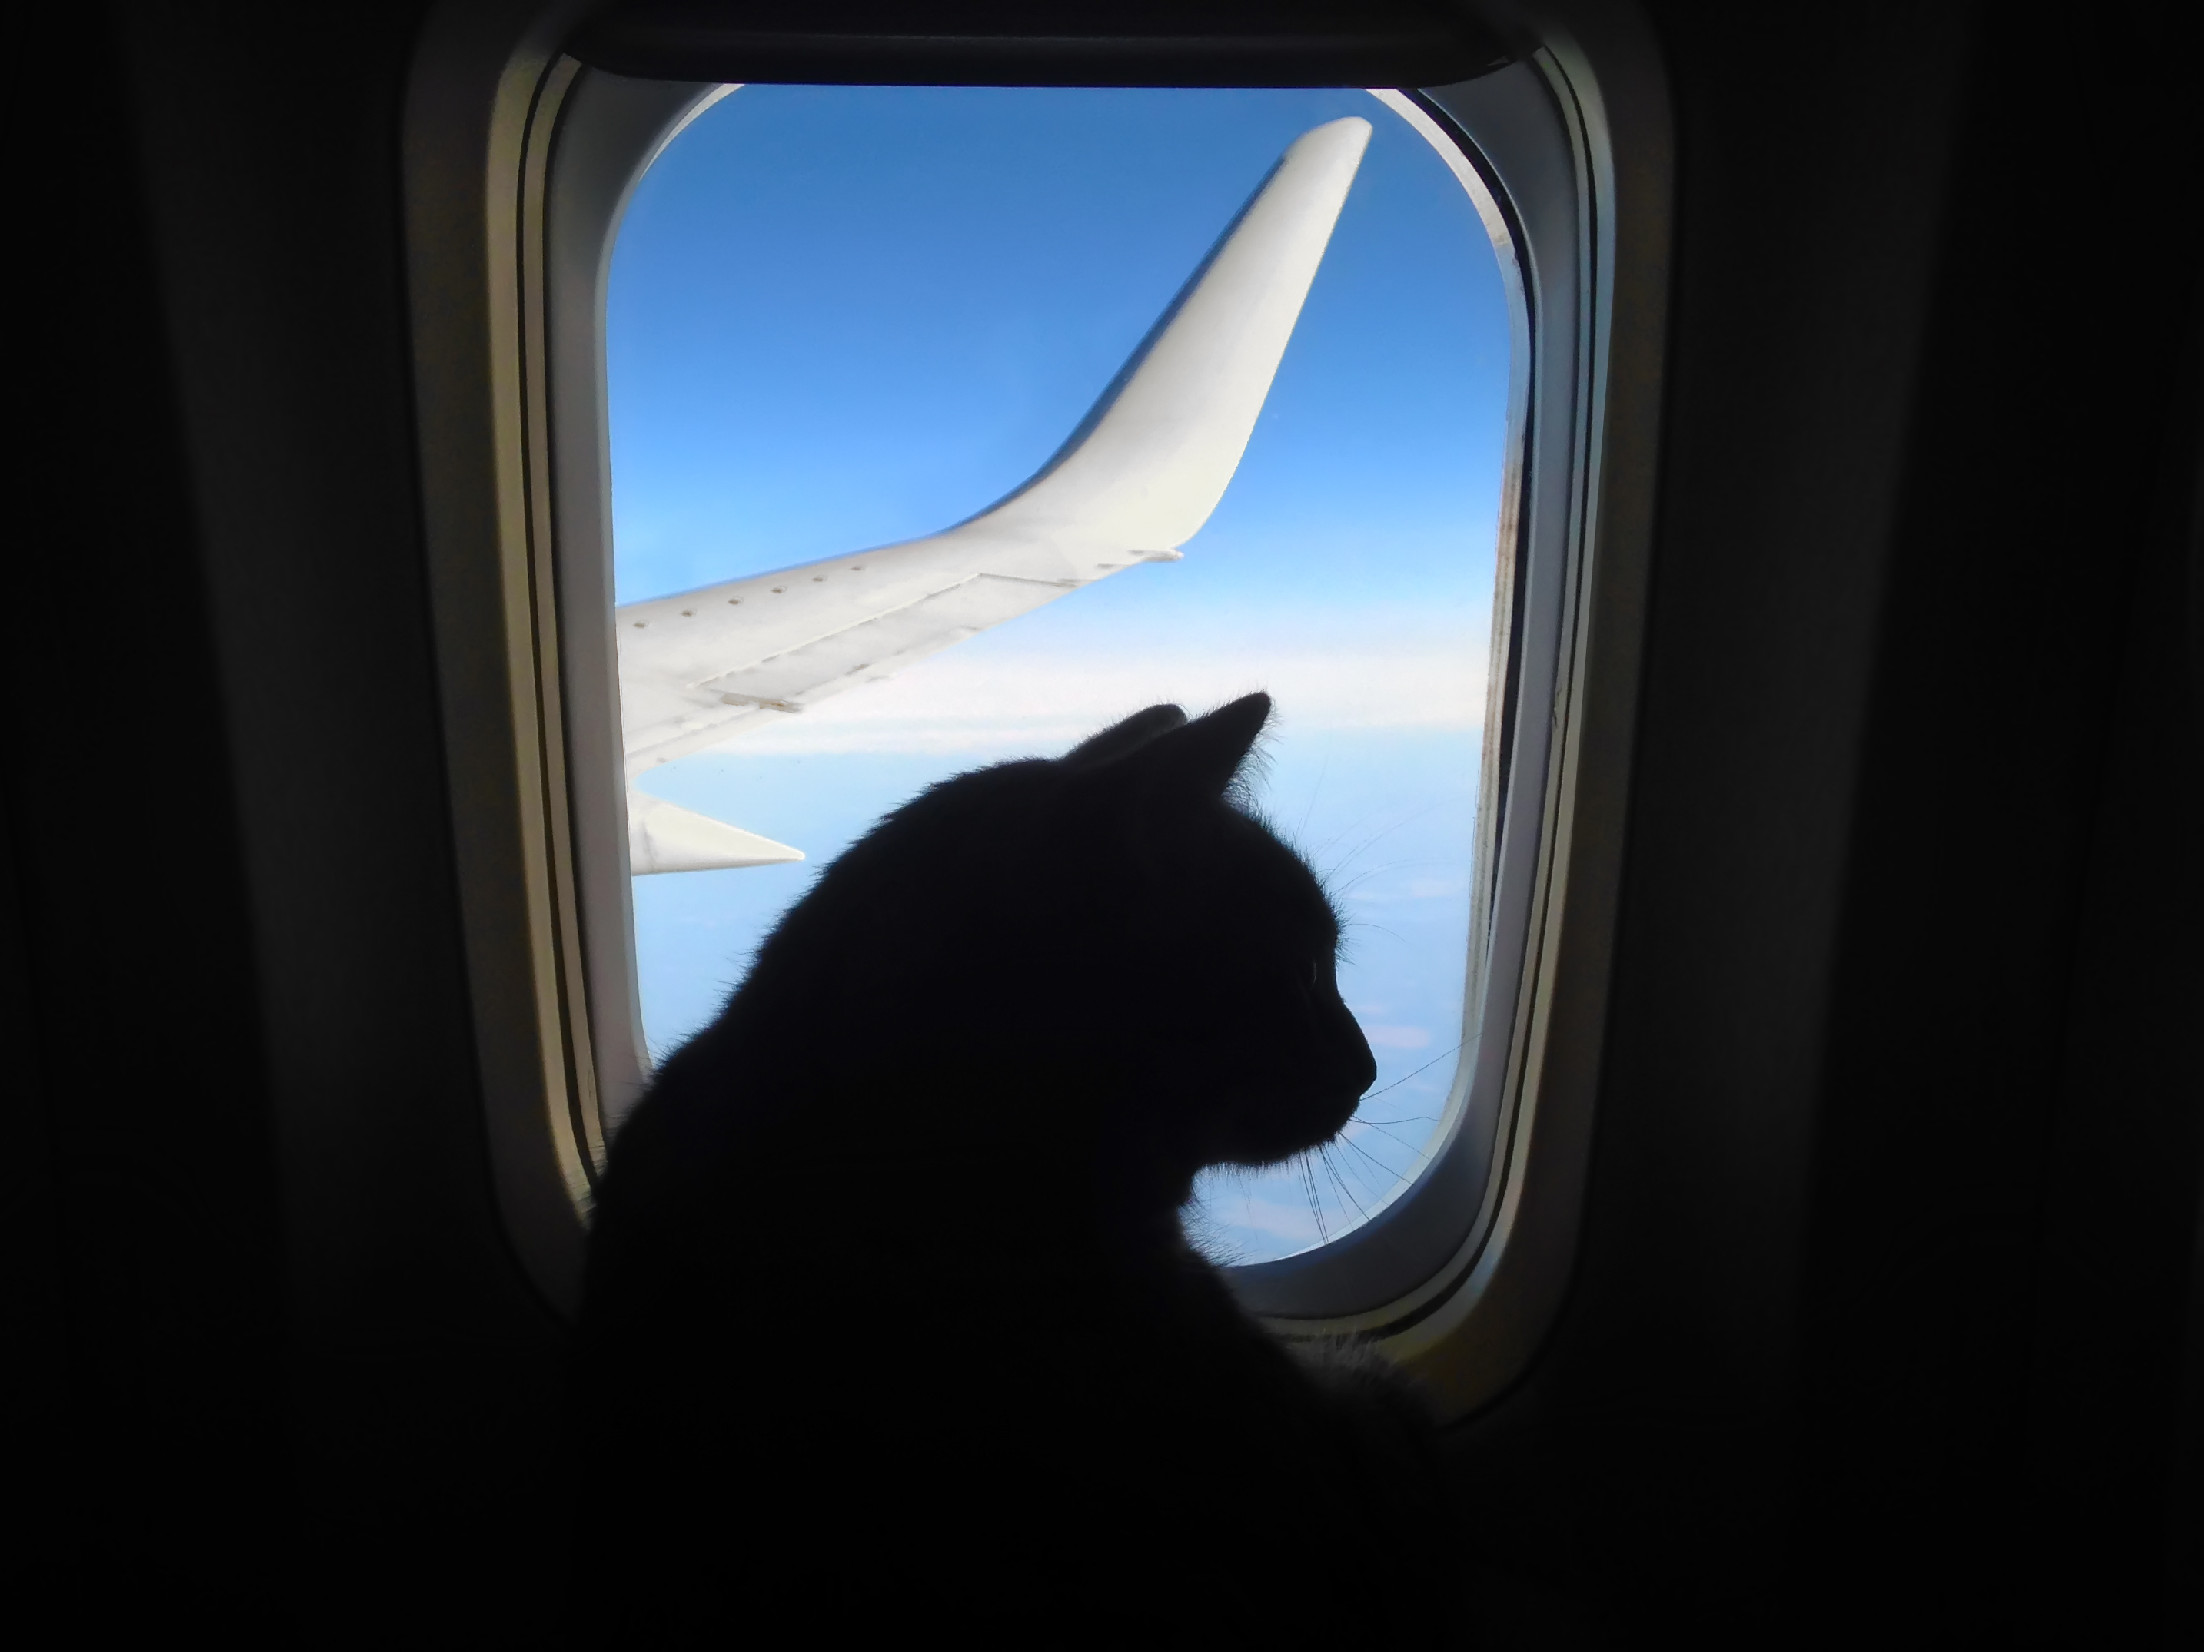 Többszöri kérésre sem fejezte be macskája szoptatását egy nő a repülőn